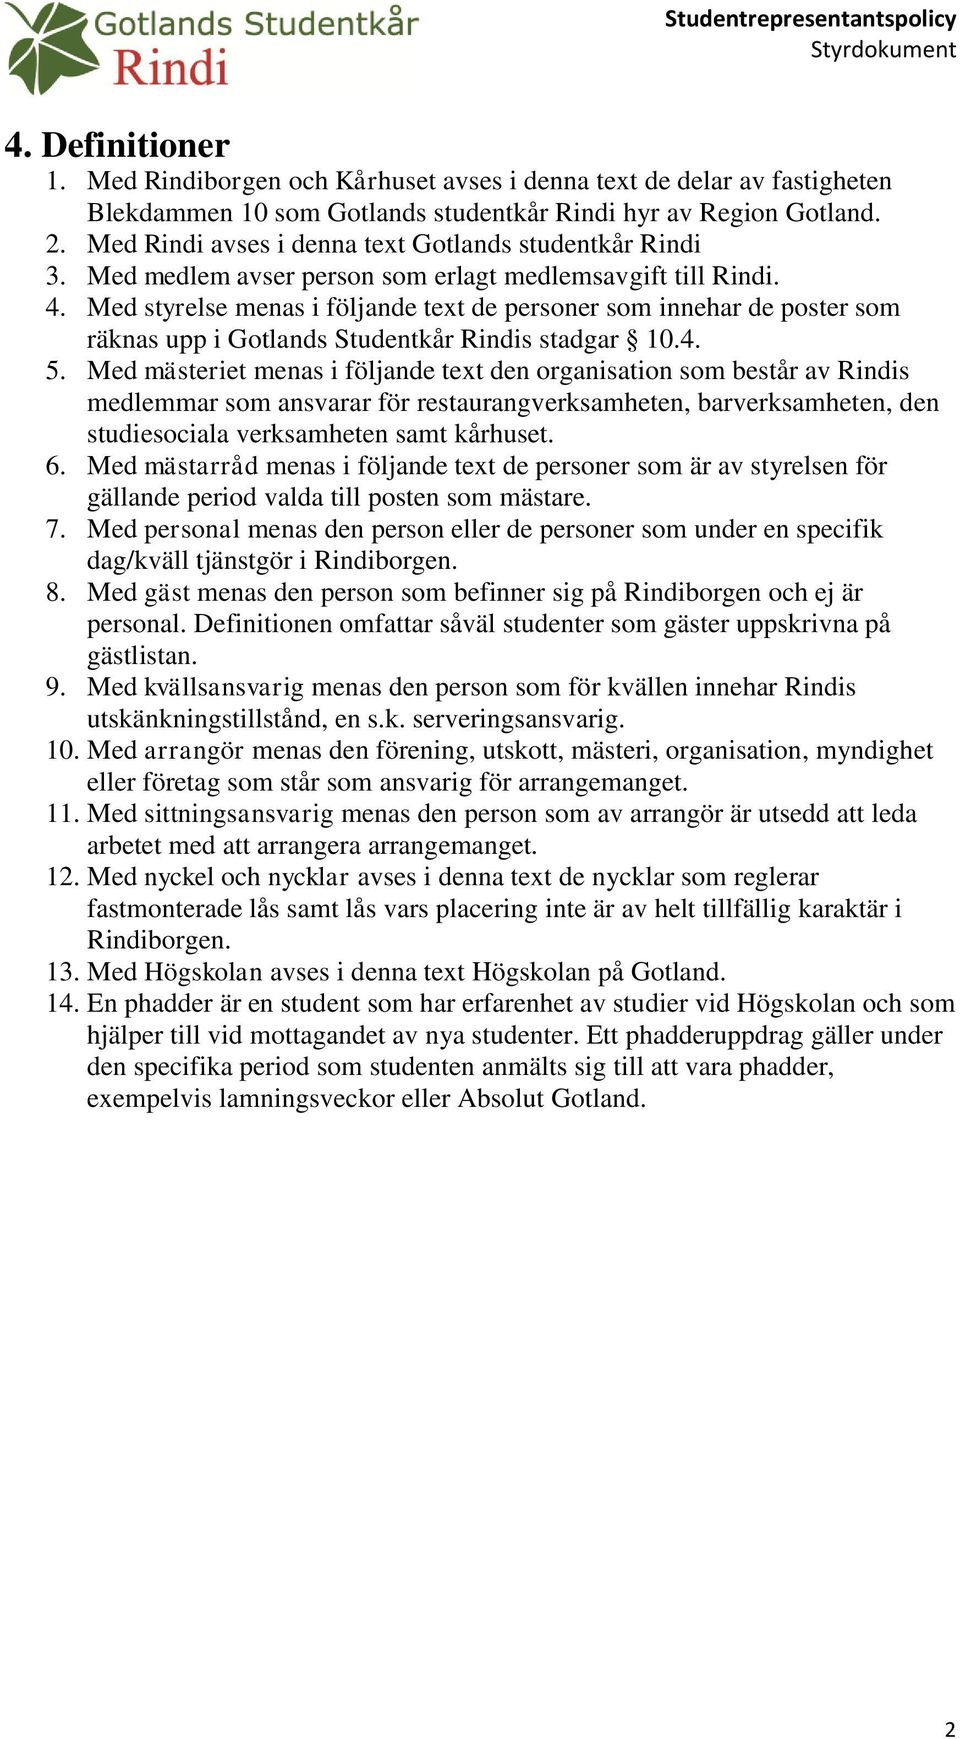 Med styrelse menas i följande text de personer som innehar de poster som räknas upp i Gotlands Studentkår Rindis stadgar 10.4. 5.